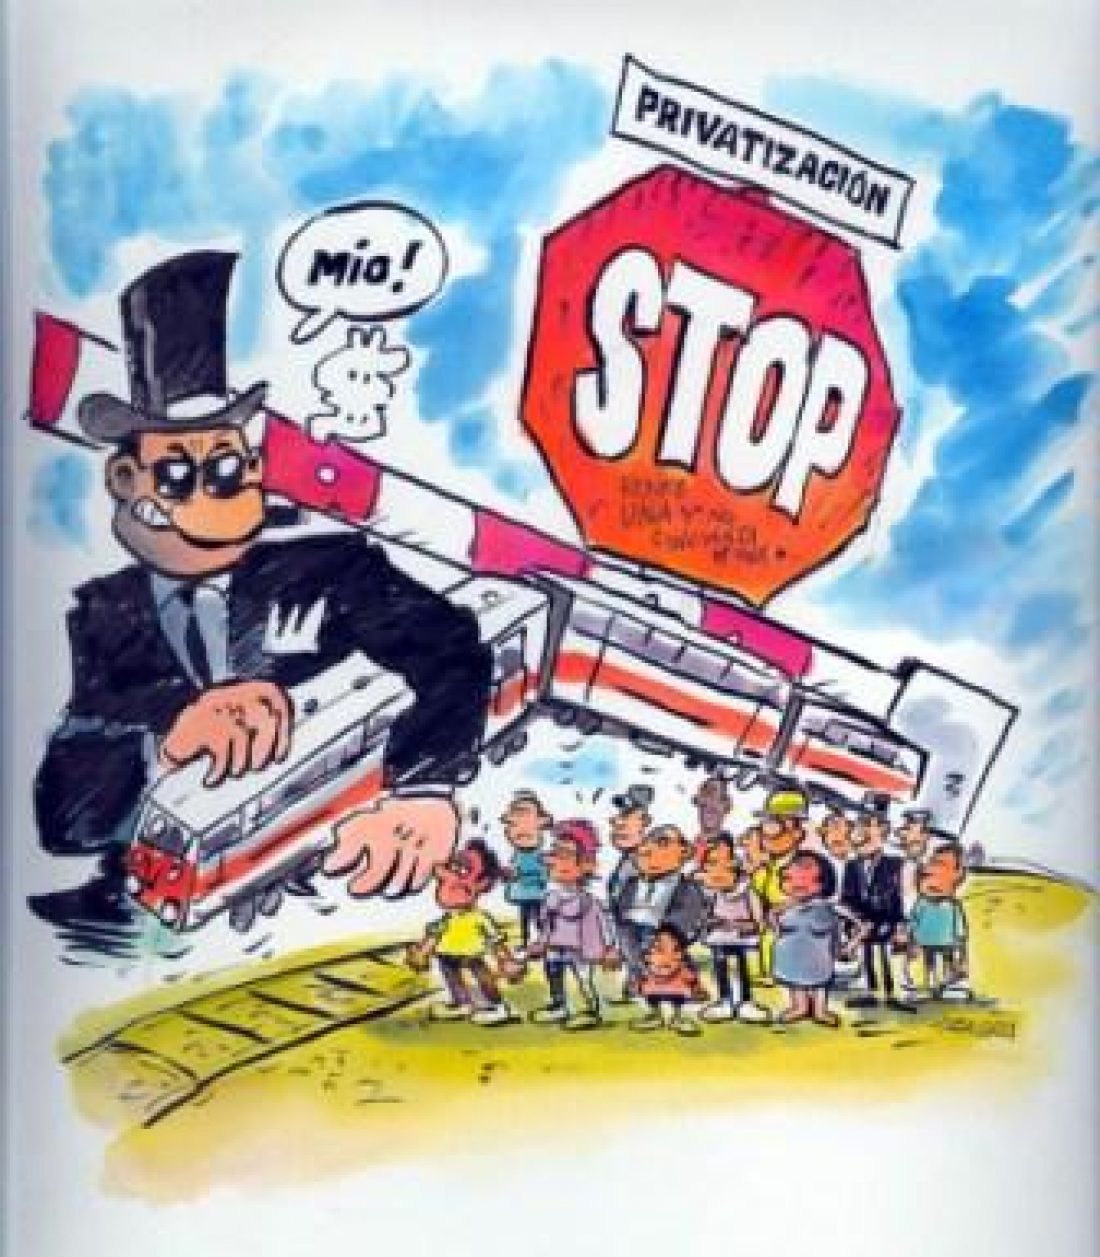 CGT dice NO a la privatización de Renfe